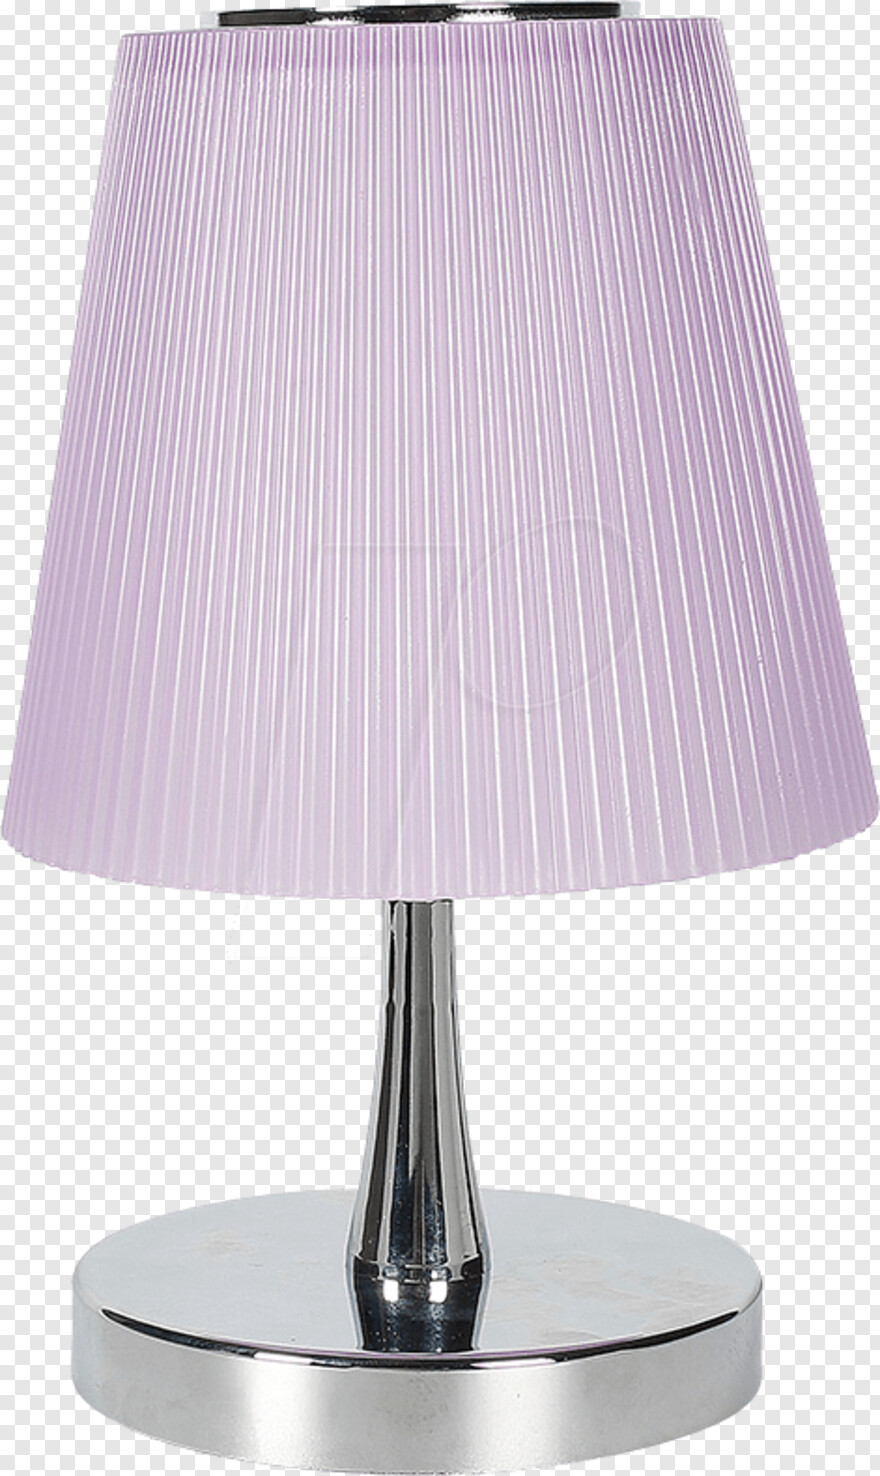 lamp # 335704